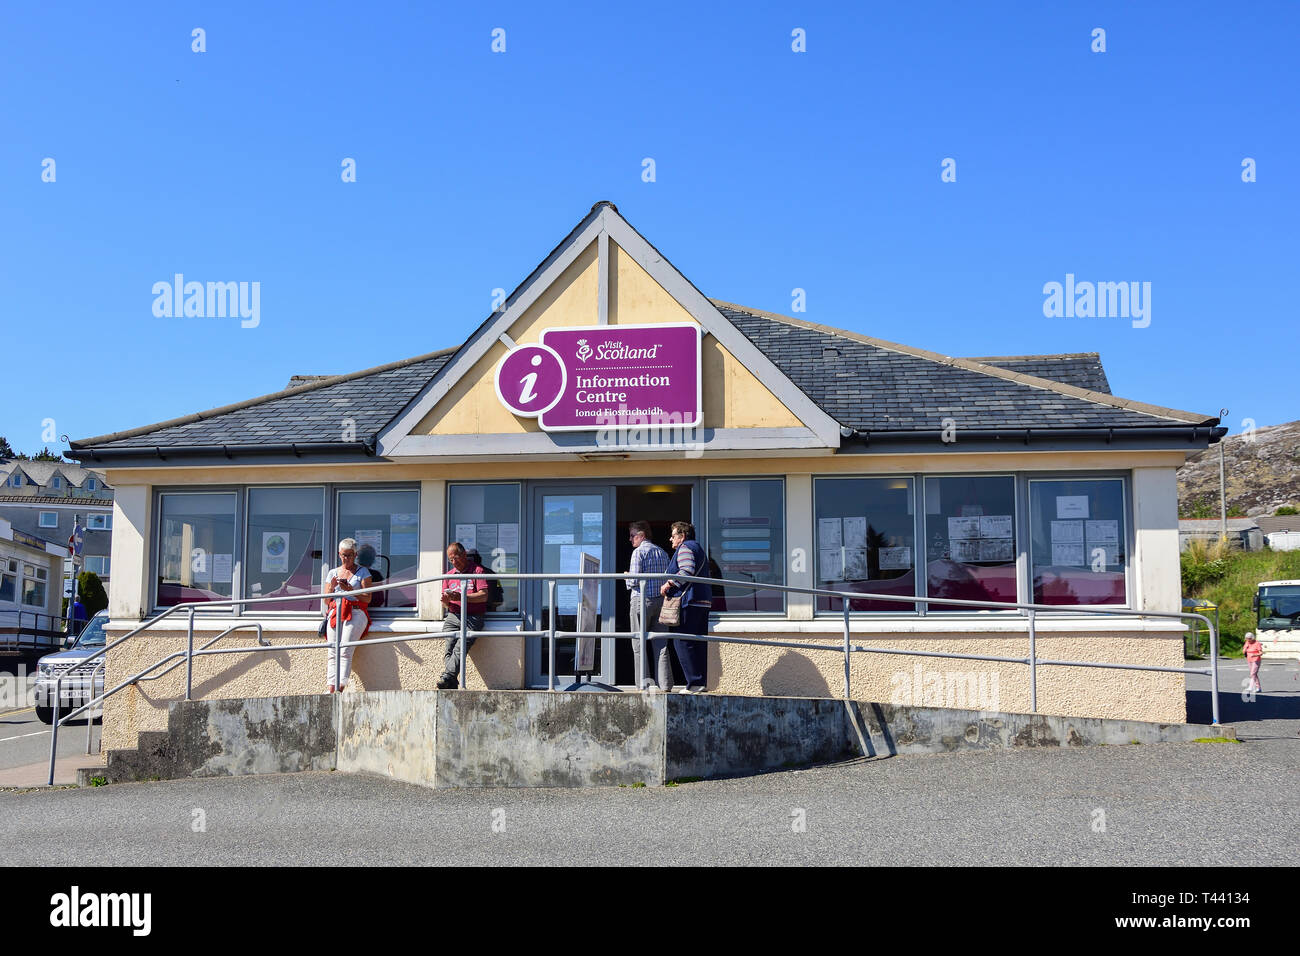 'Visitar Escocia' Information Center, Pier Road, Tarbert (Tairbeart), Isla de Harris, Outer Hebrides, Na h-Eileanan Siar, Scotland, Reino Unido Foto de stock